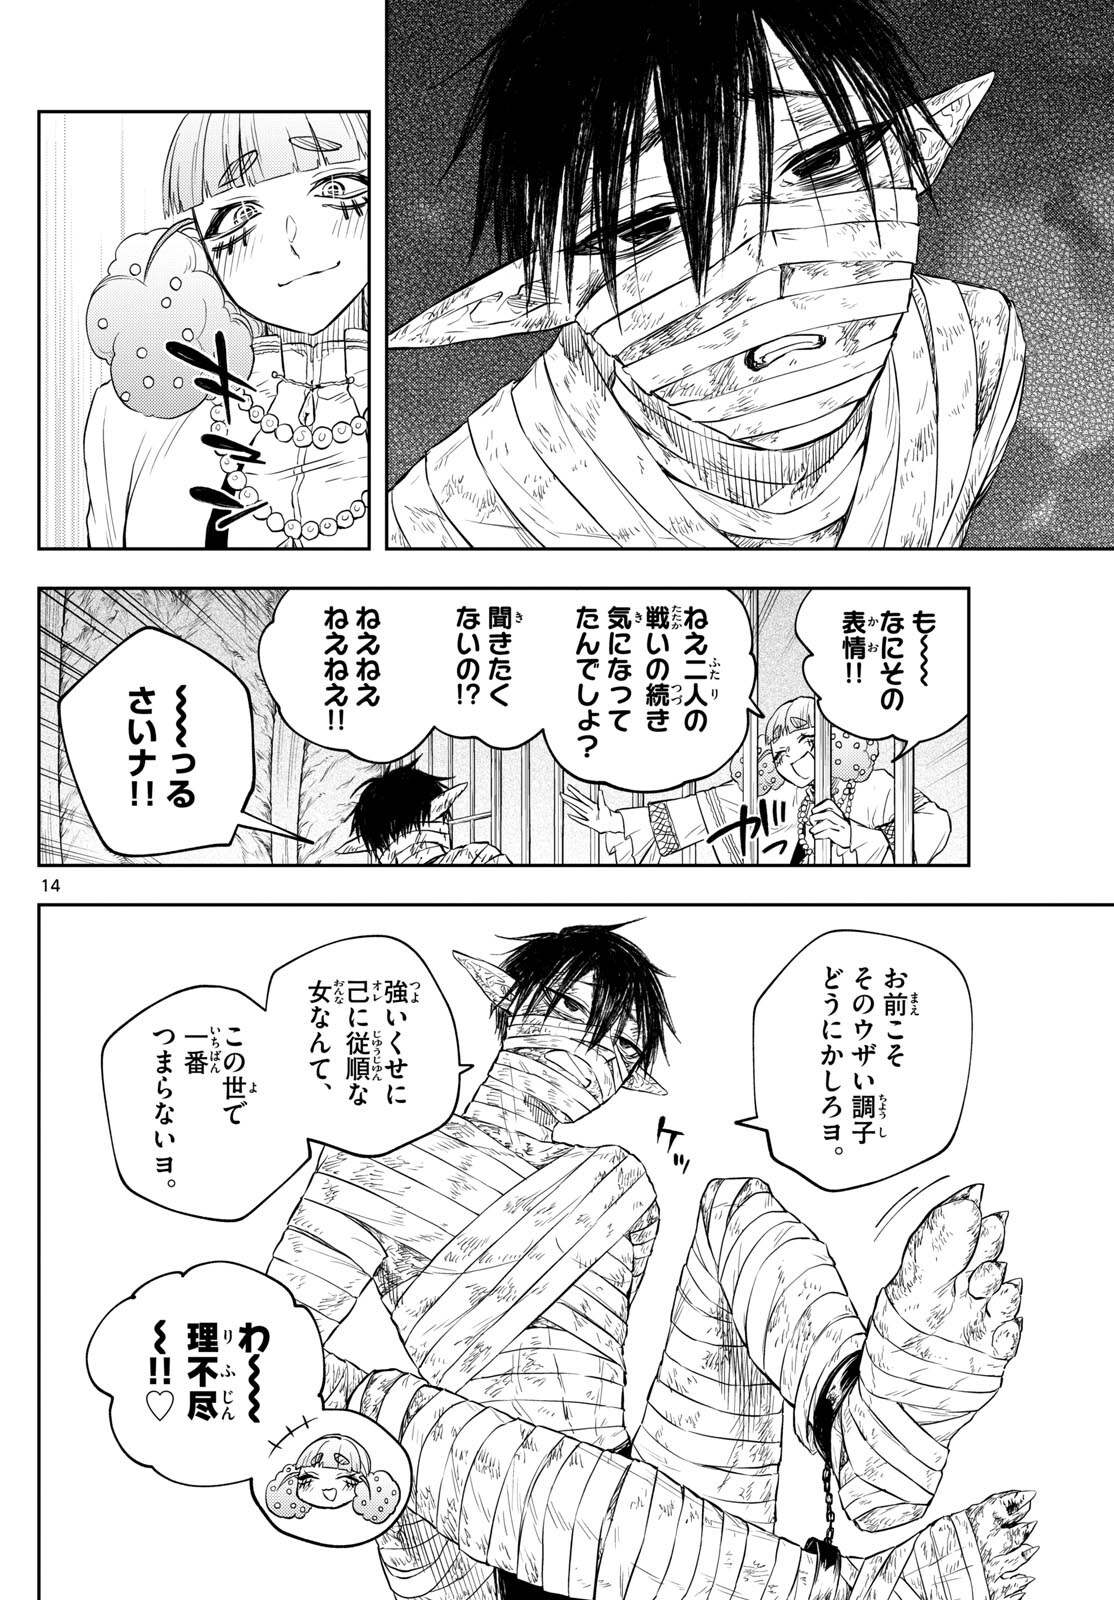 Akatsuki Jihen - Chapter 42 - Page 14